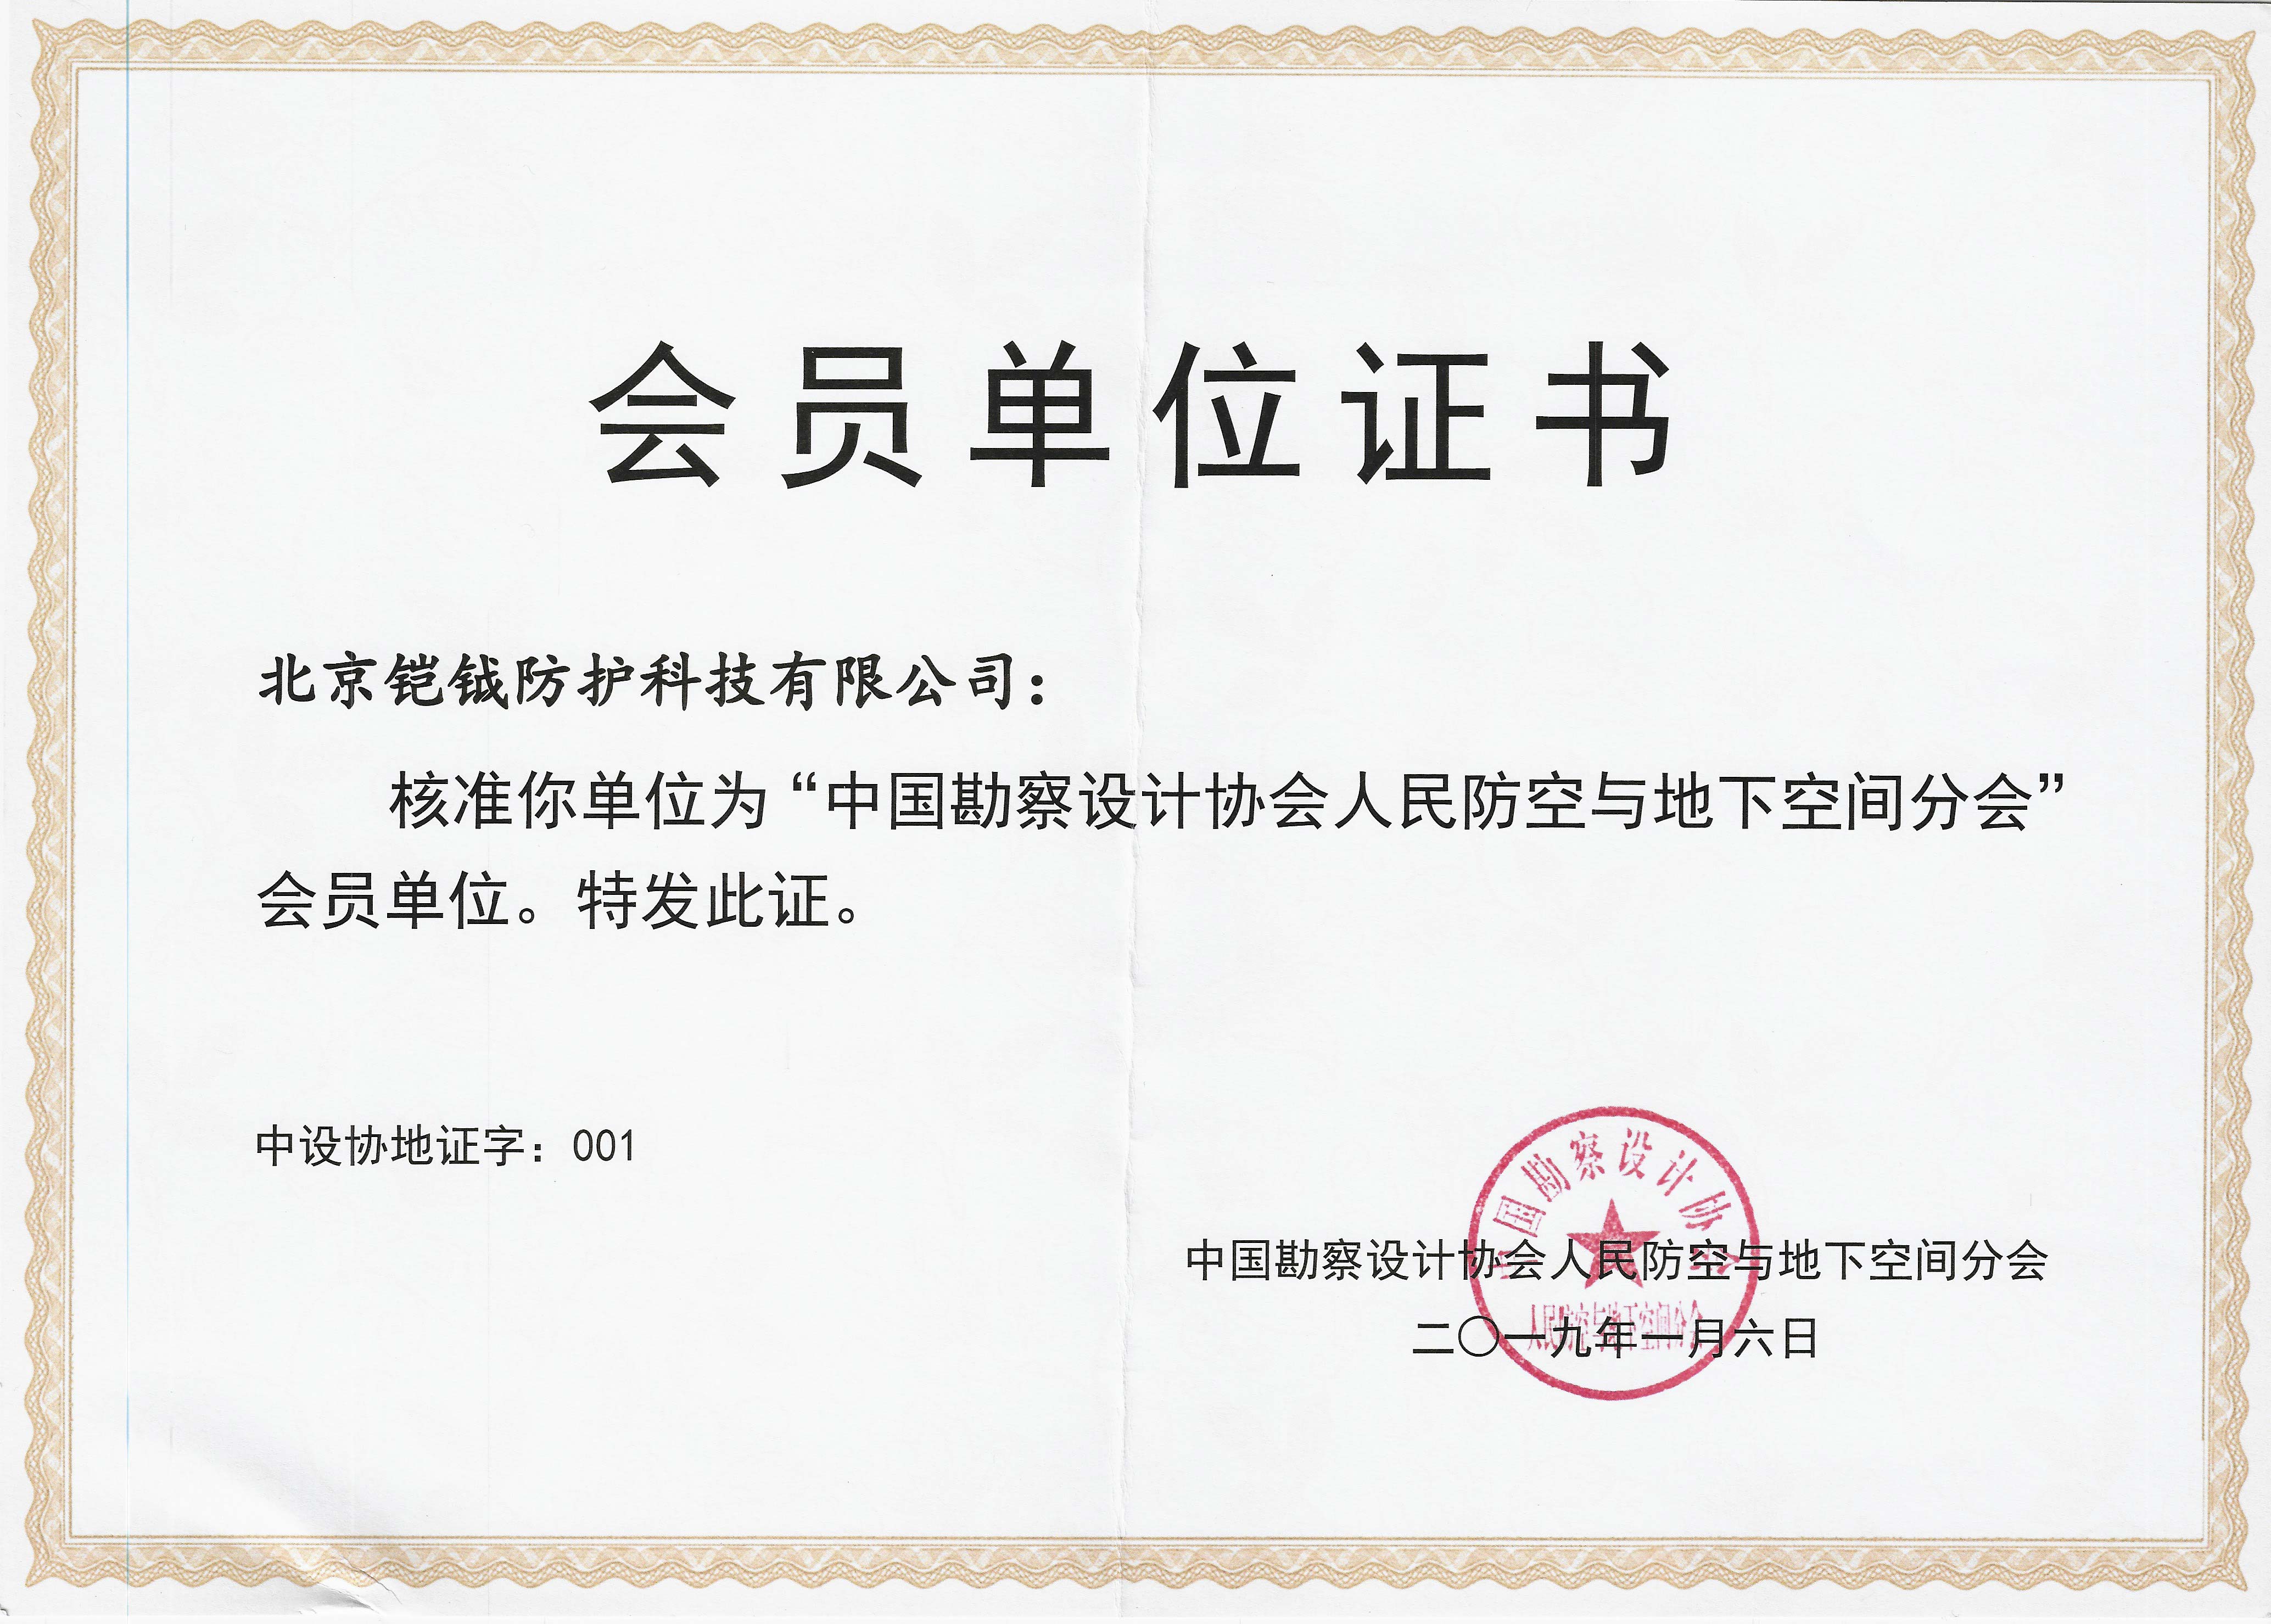 中国勘察设计协会人民防空与地下空间分会会员单位证书